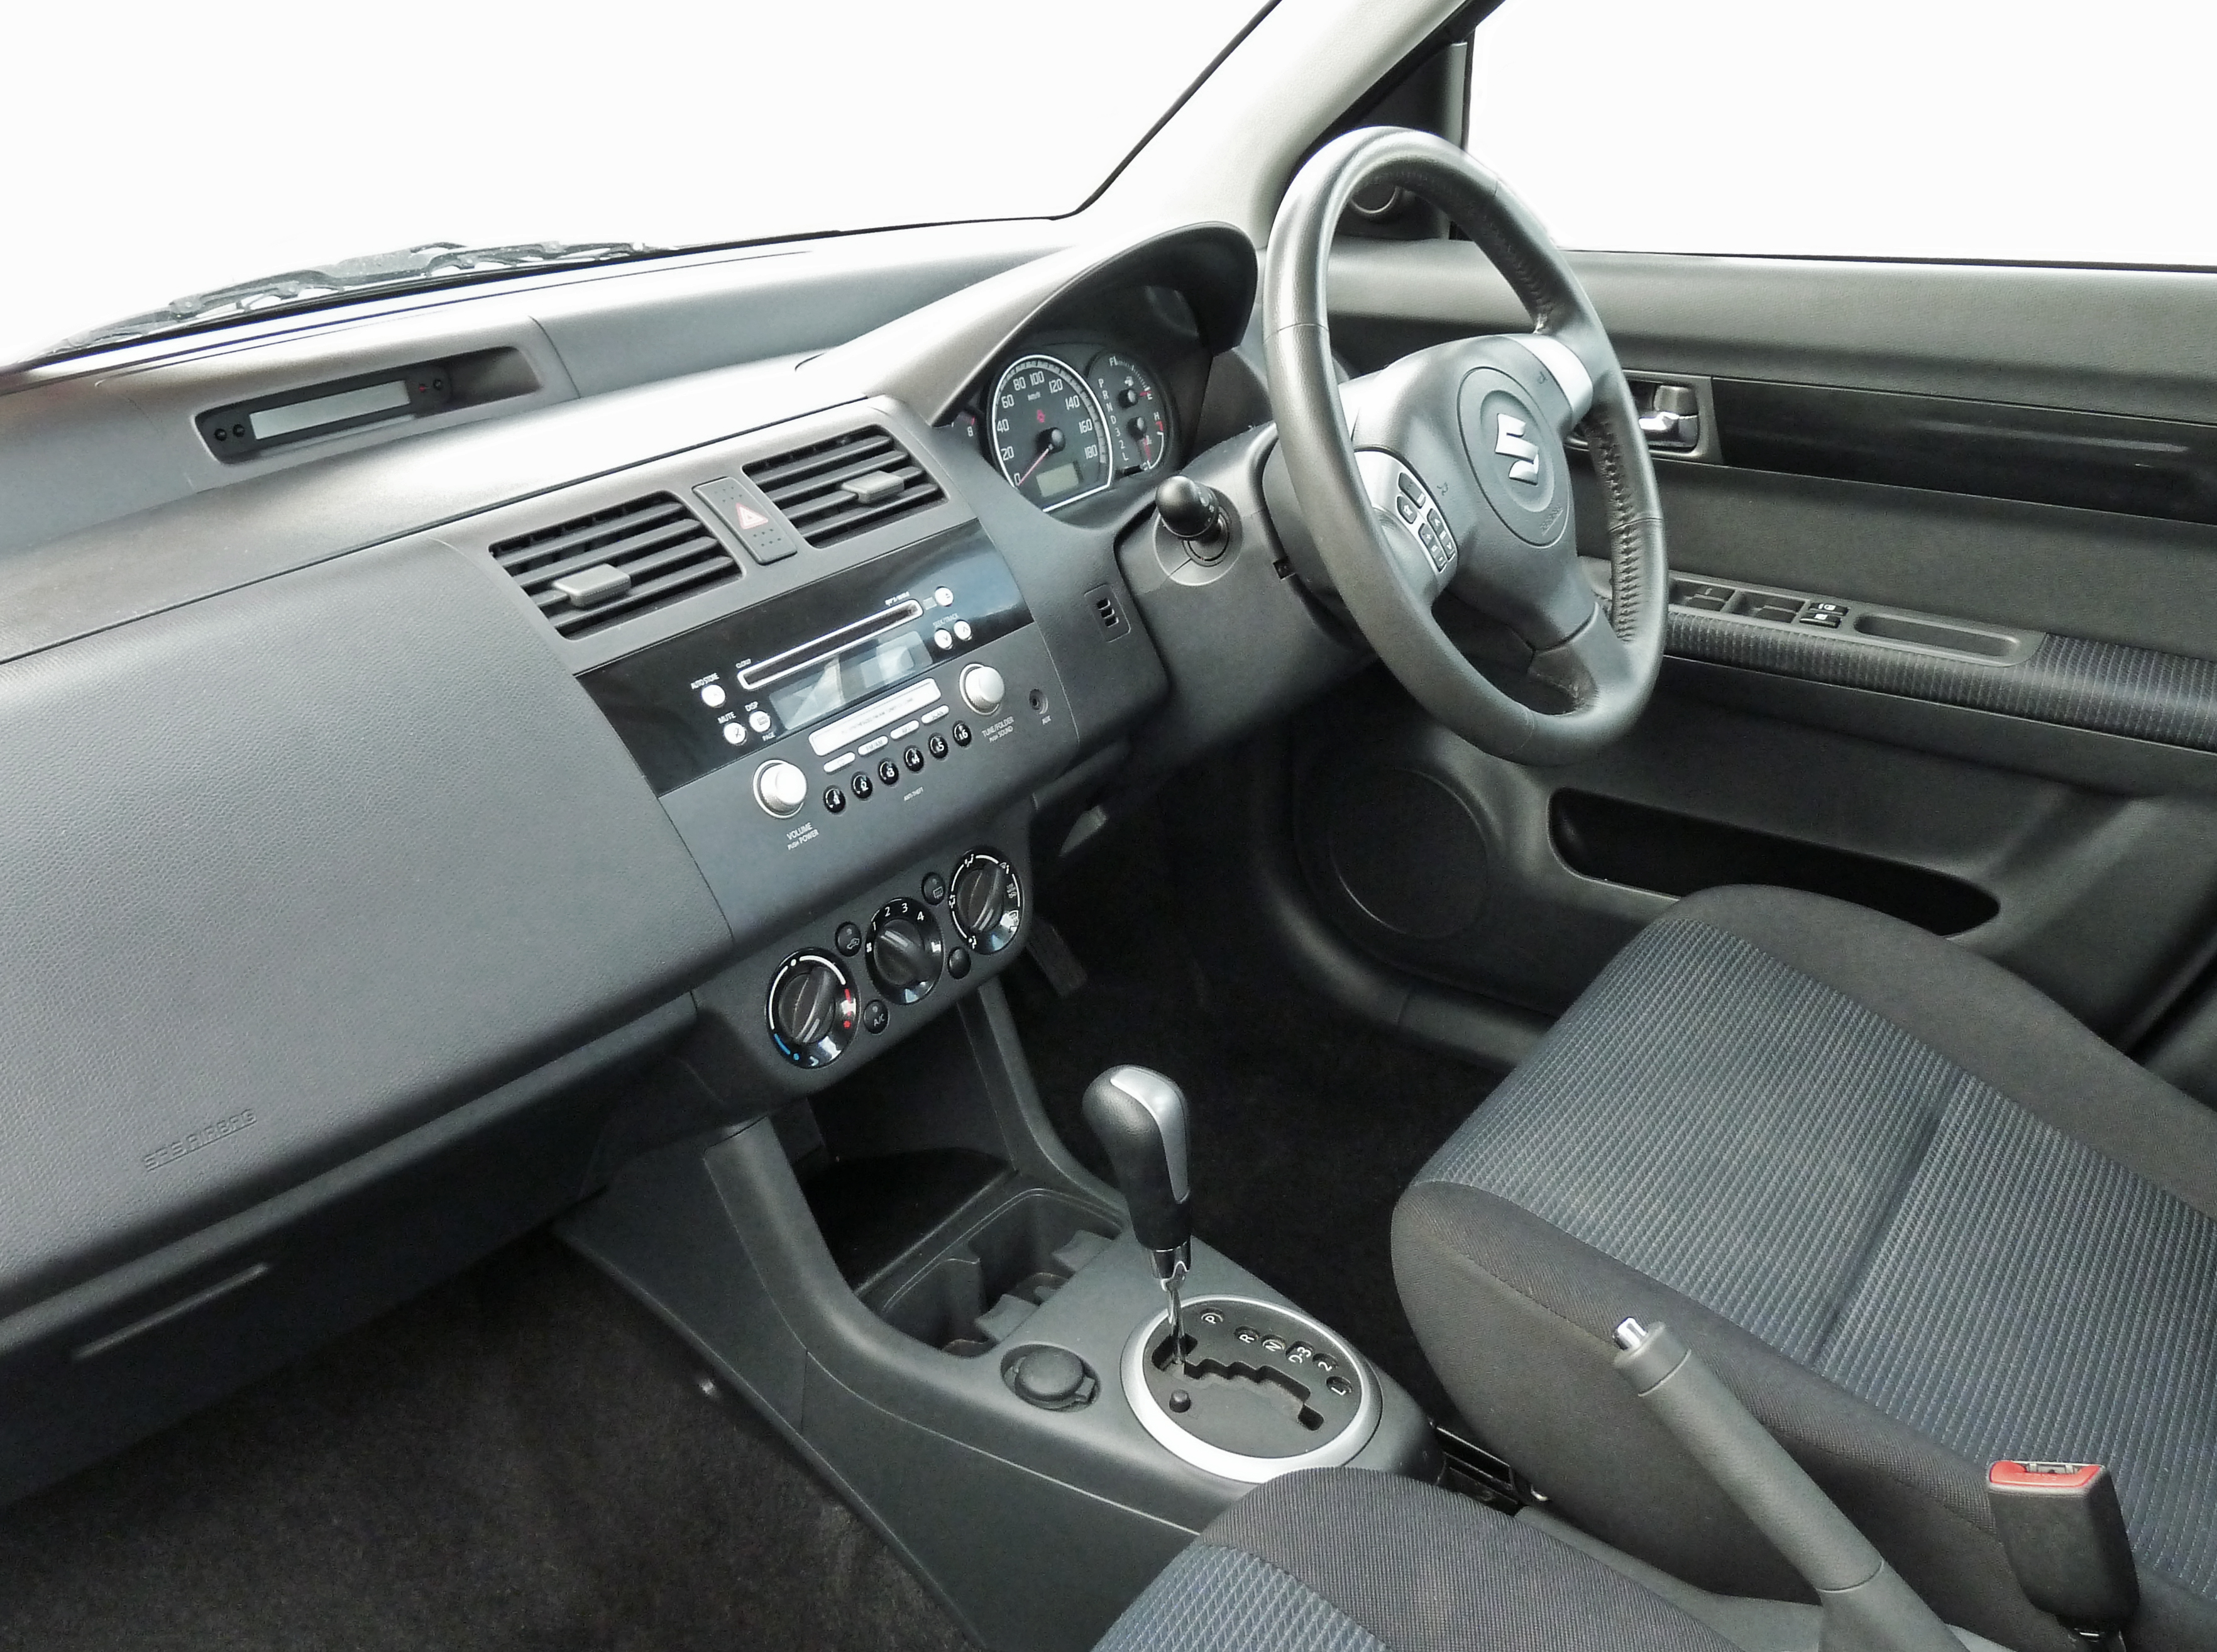 File 2009 Suzuki Swift Rs415 5 Door Hatchback 2011 04 22